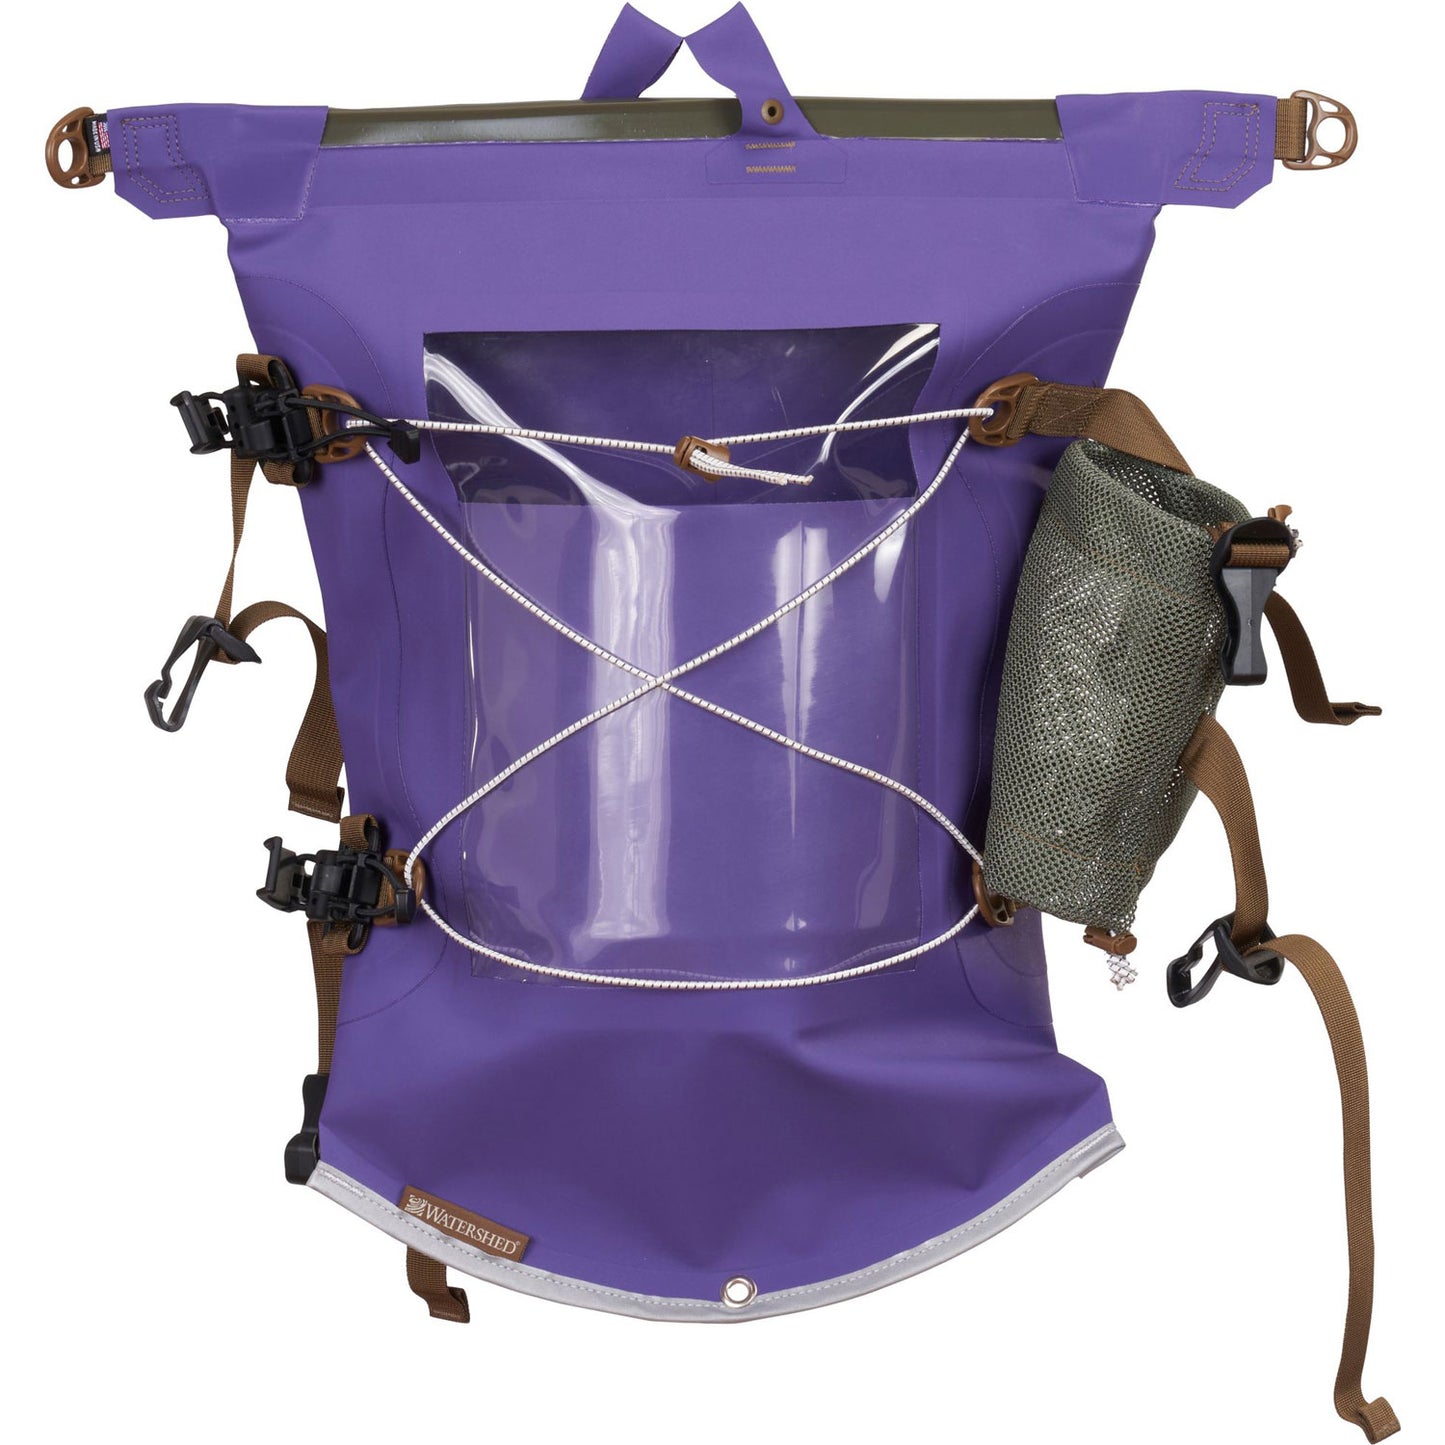 Watershed Aleutian Deck Bag in Royal Purple front